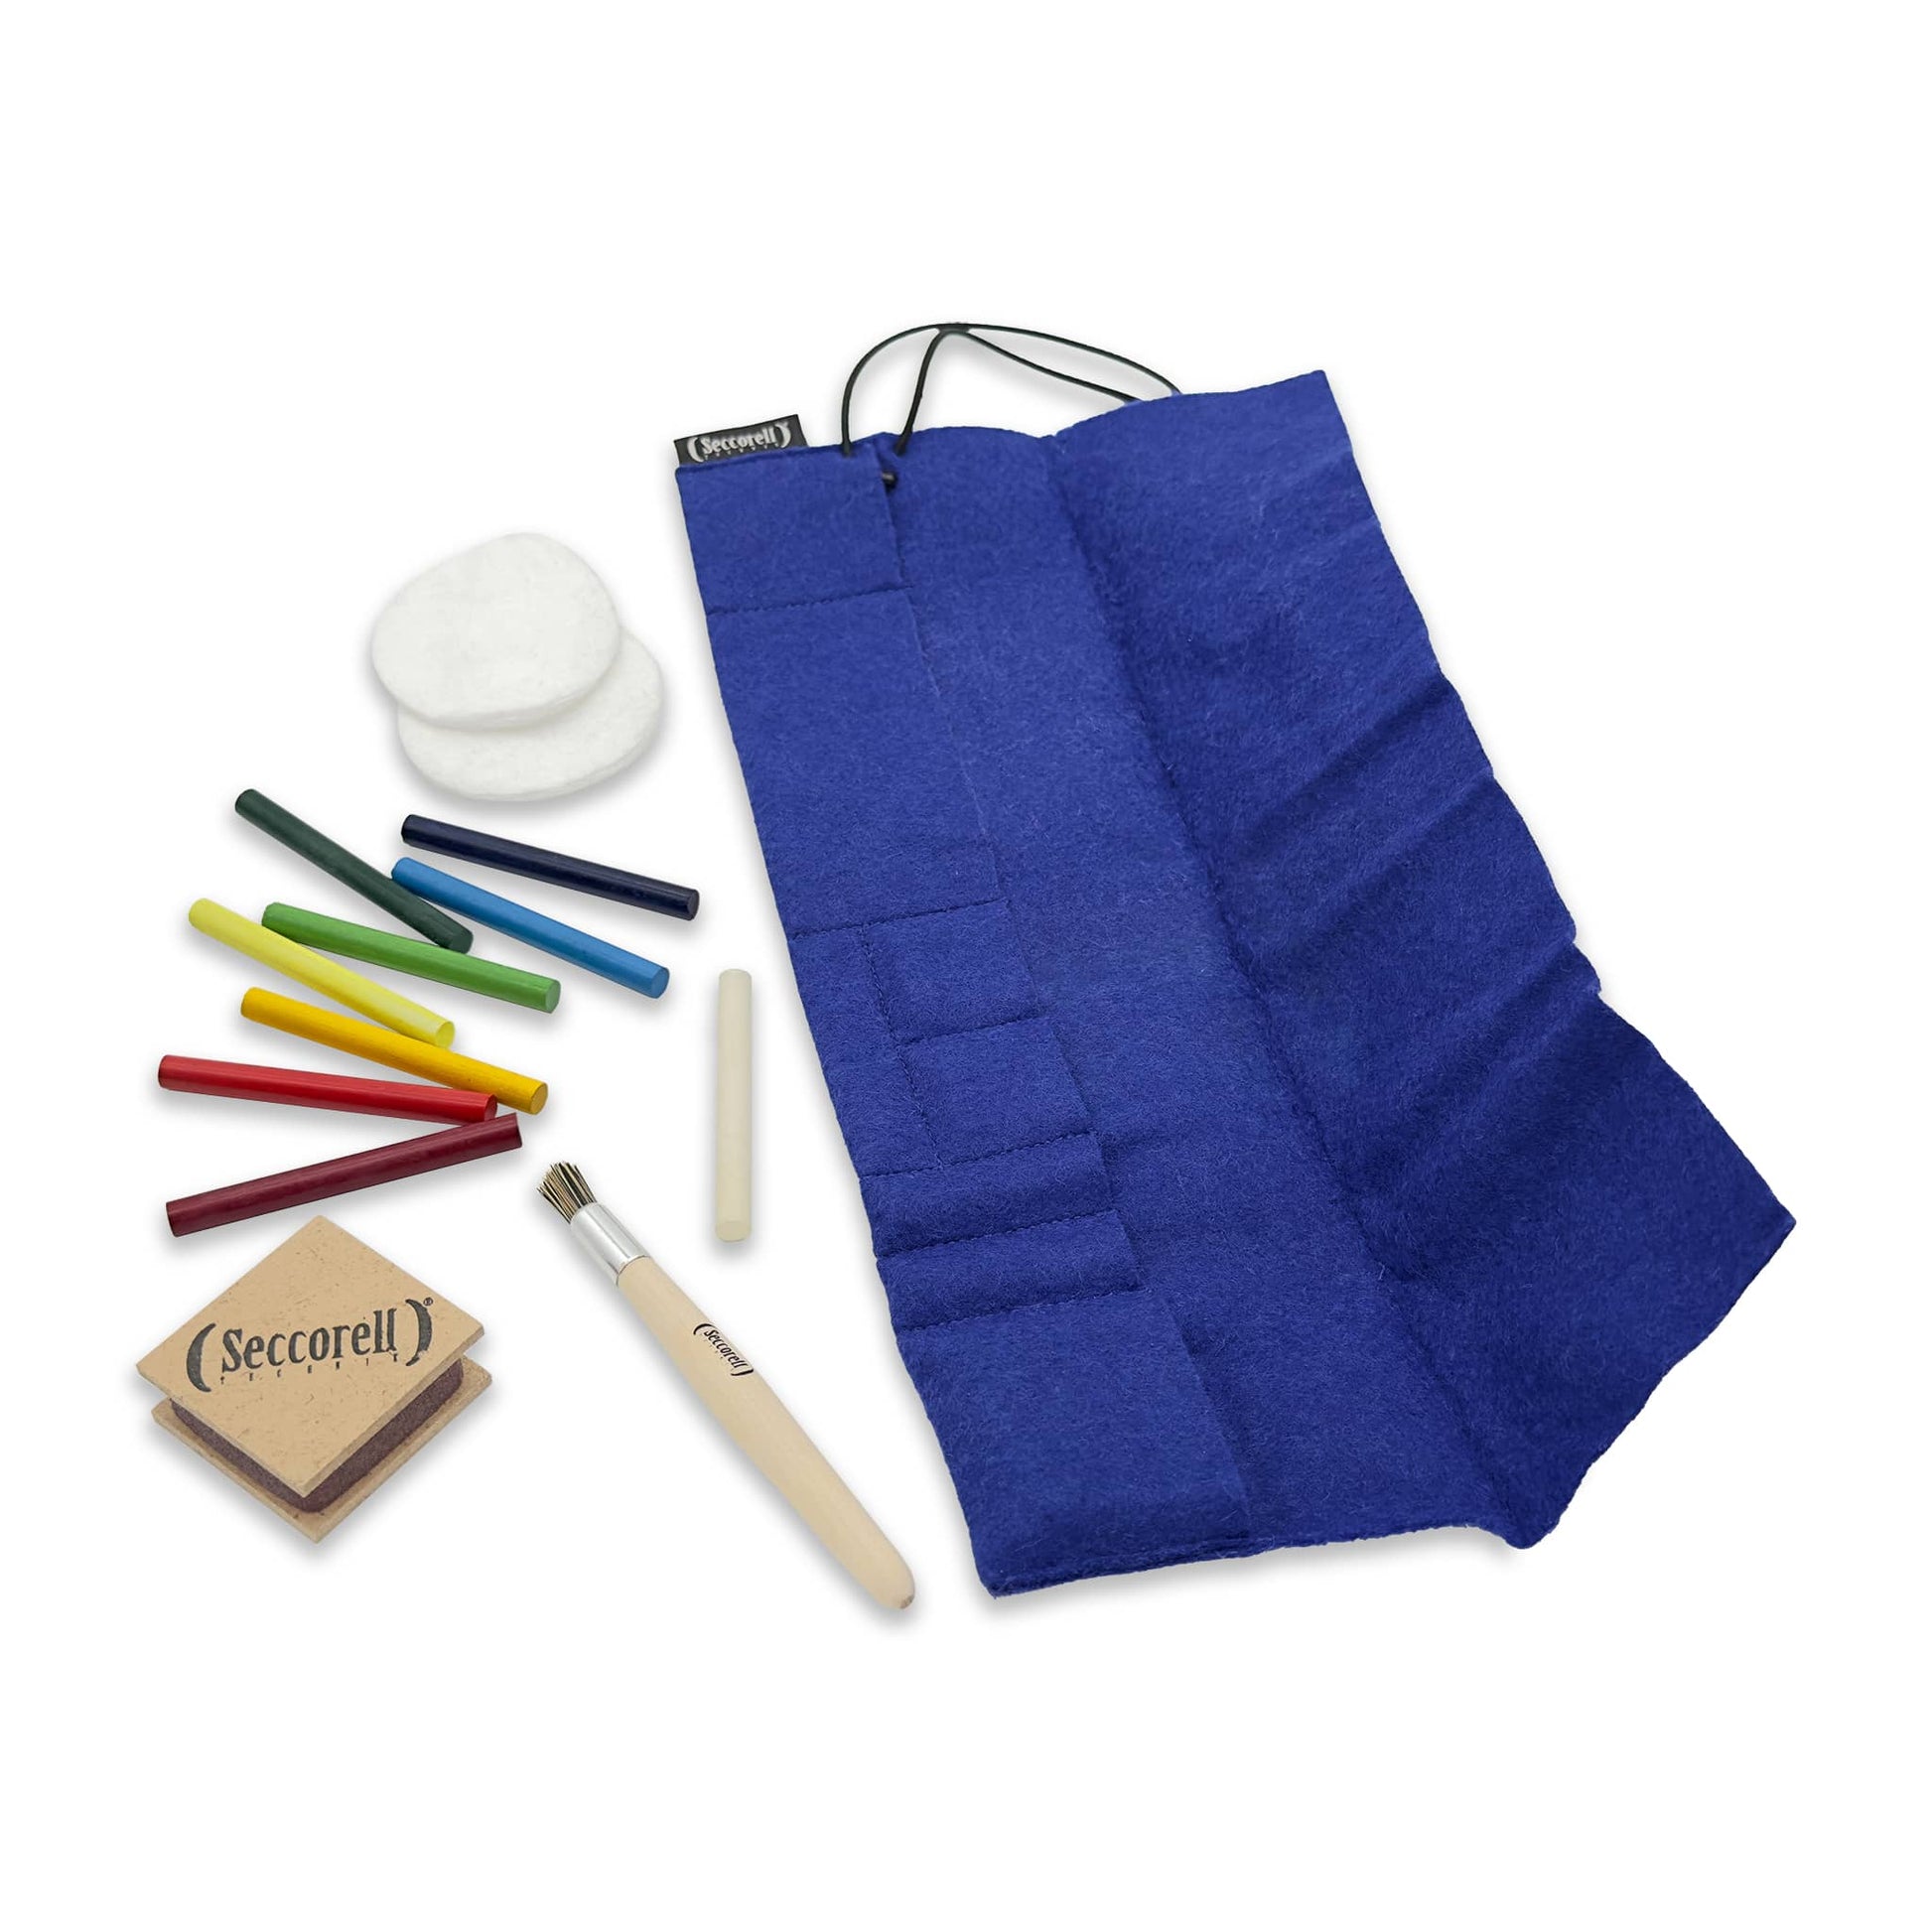 Seccorell Filz-Rolltasche, praktisch für unterwegs, inklusive Farbstäbchen, Reibeblock und Pinsel, ideal für Seccorell Künstler.